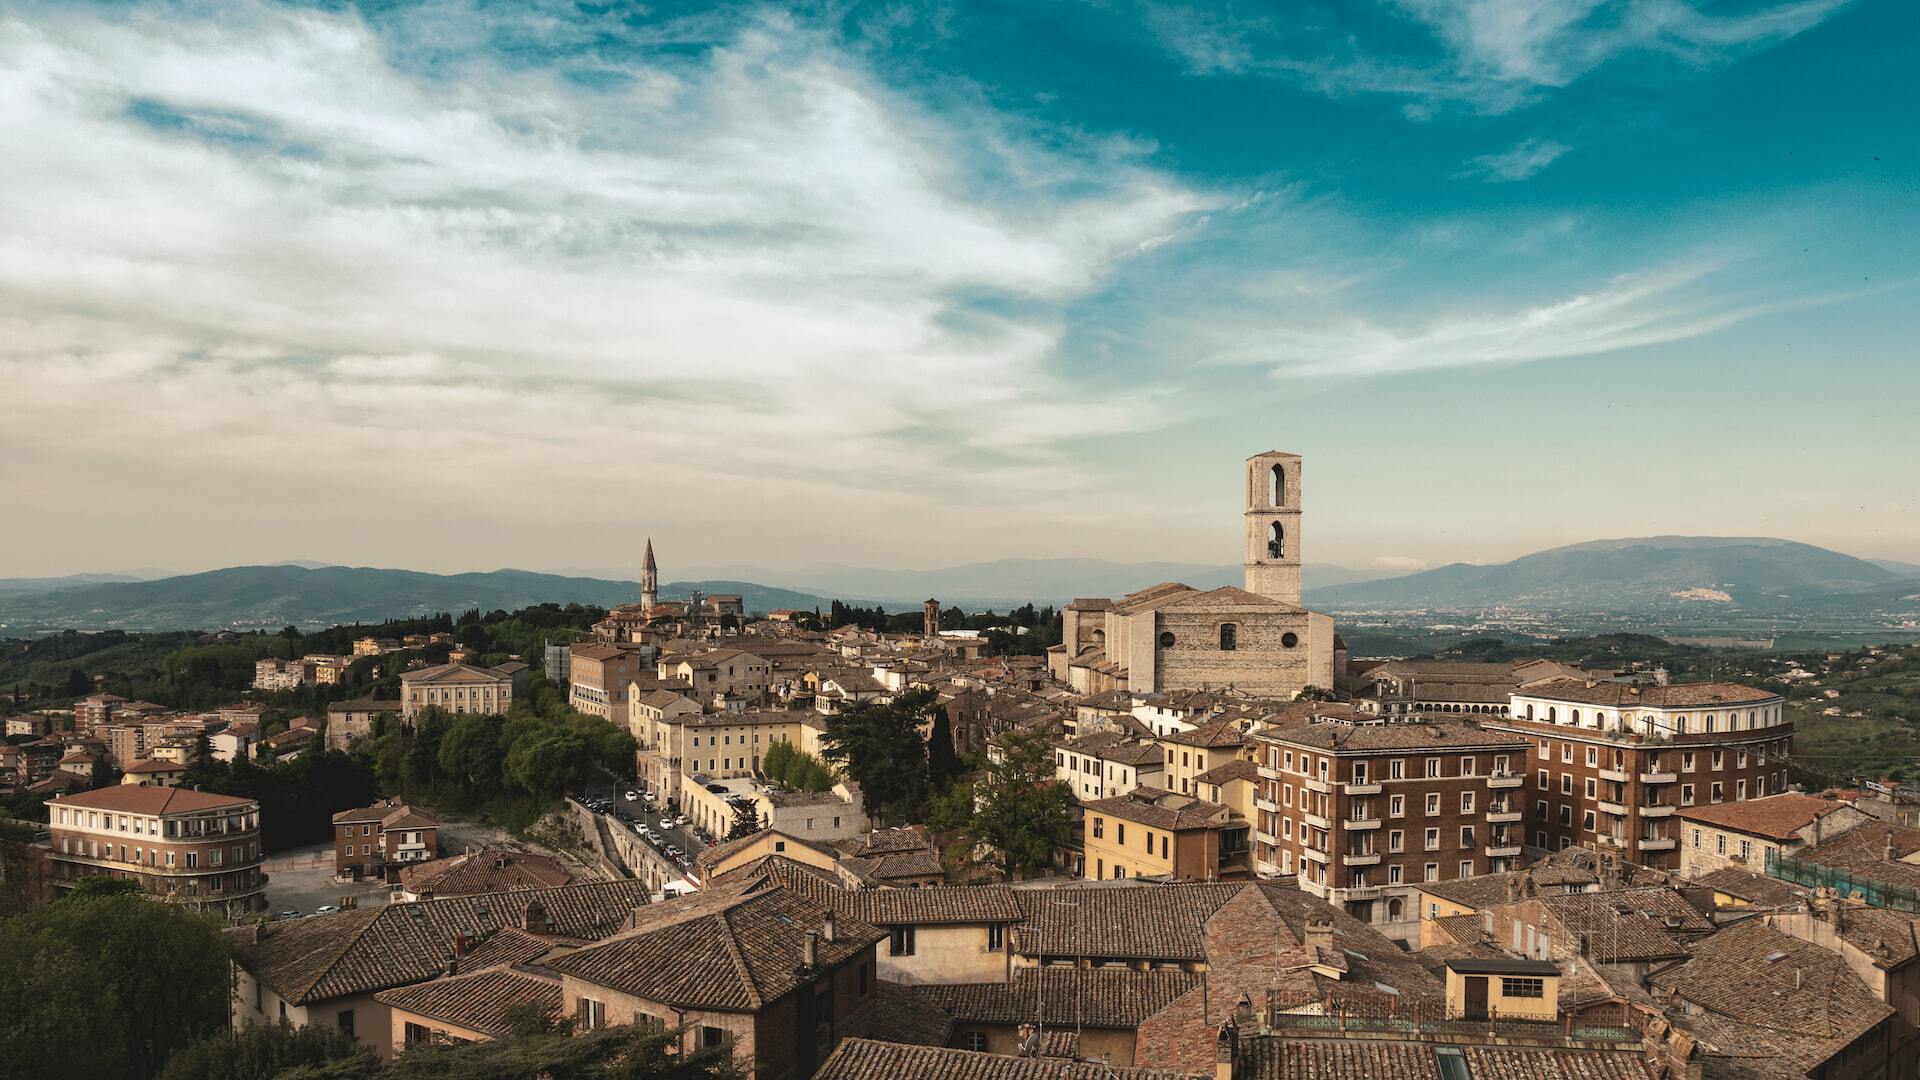 Perugia